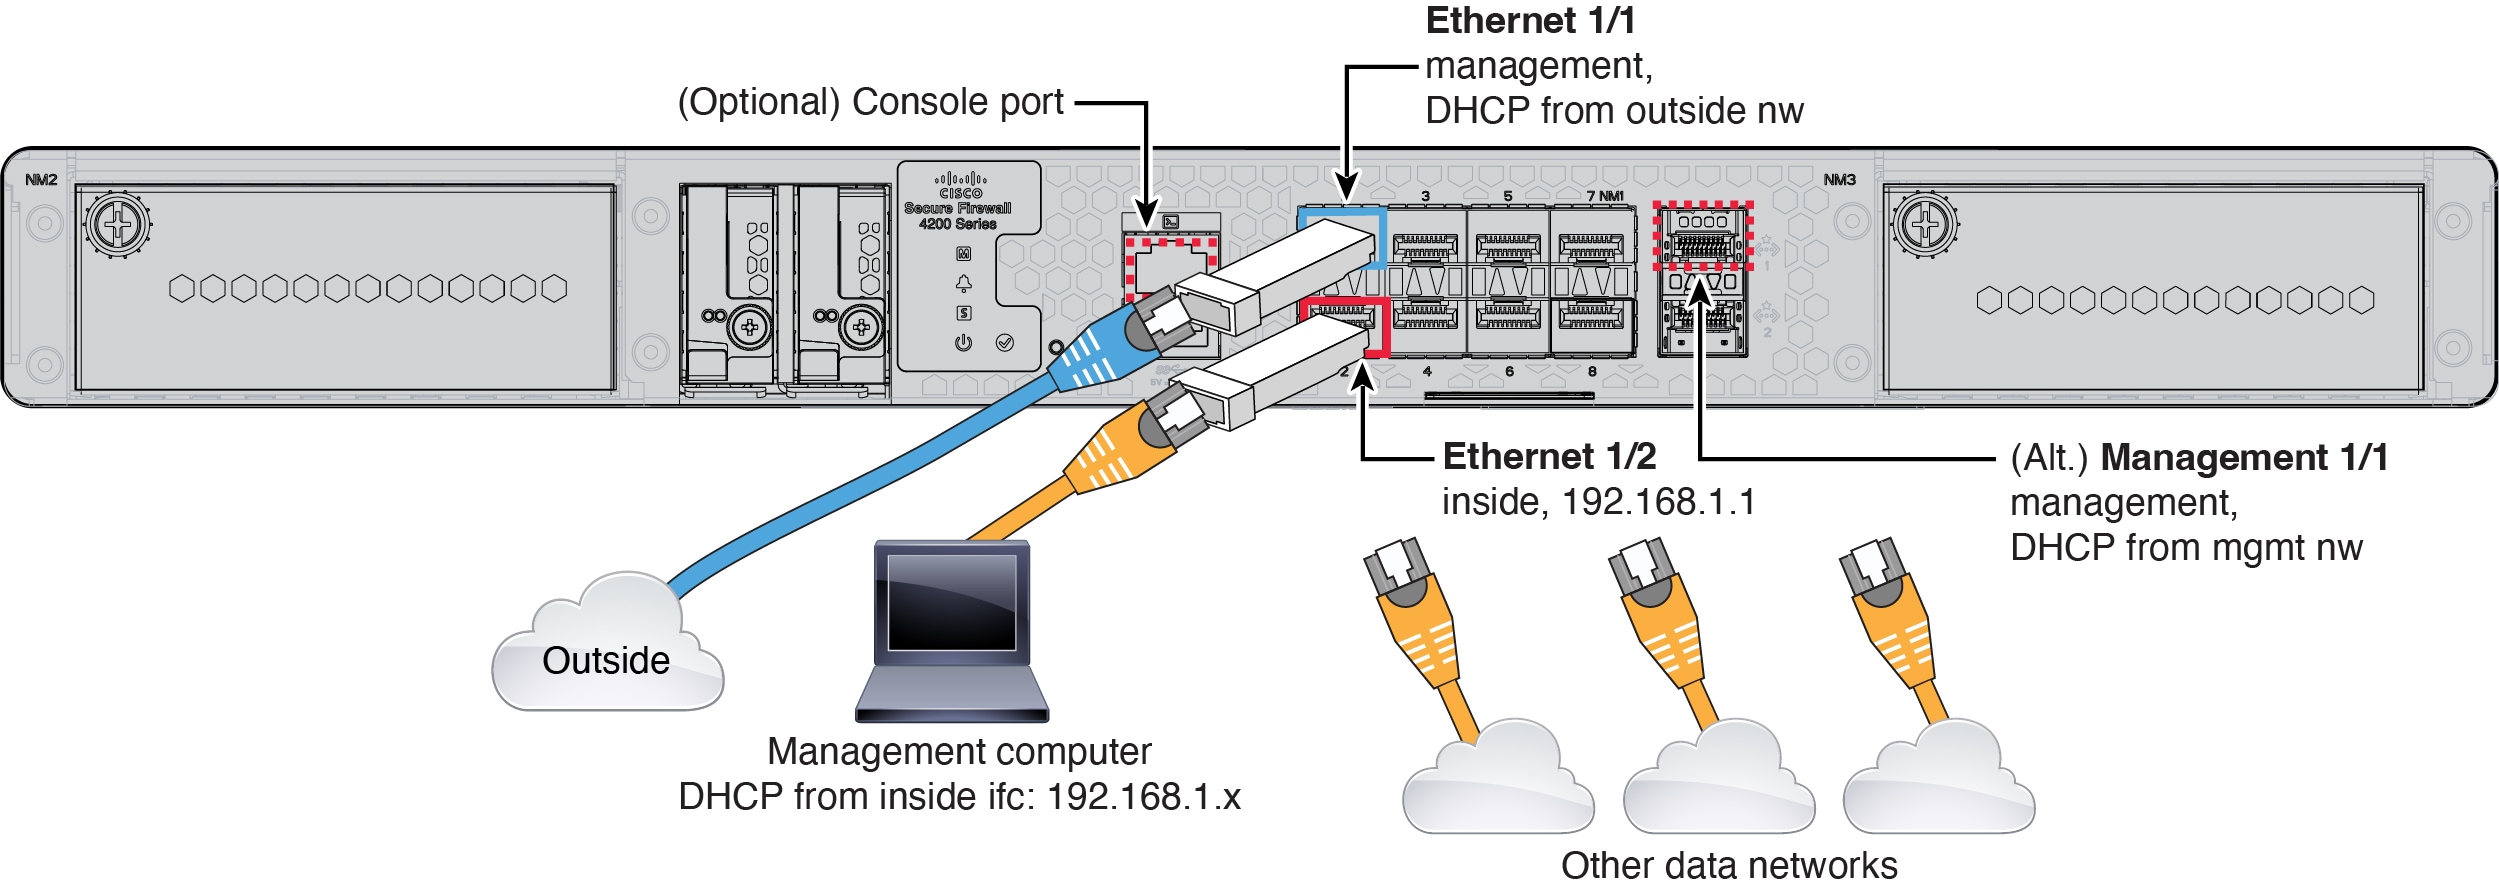 Secure Firewall 4200 케이블 연결